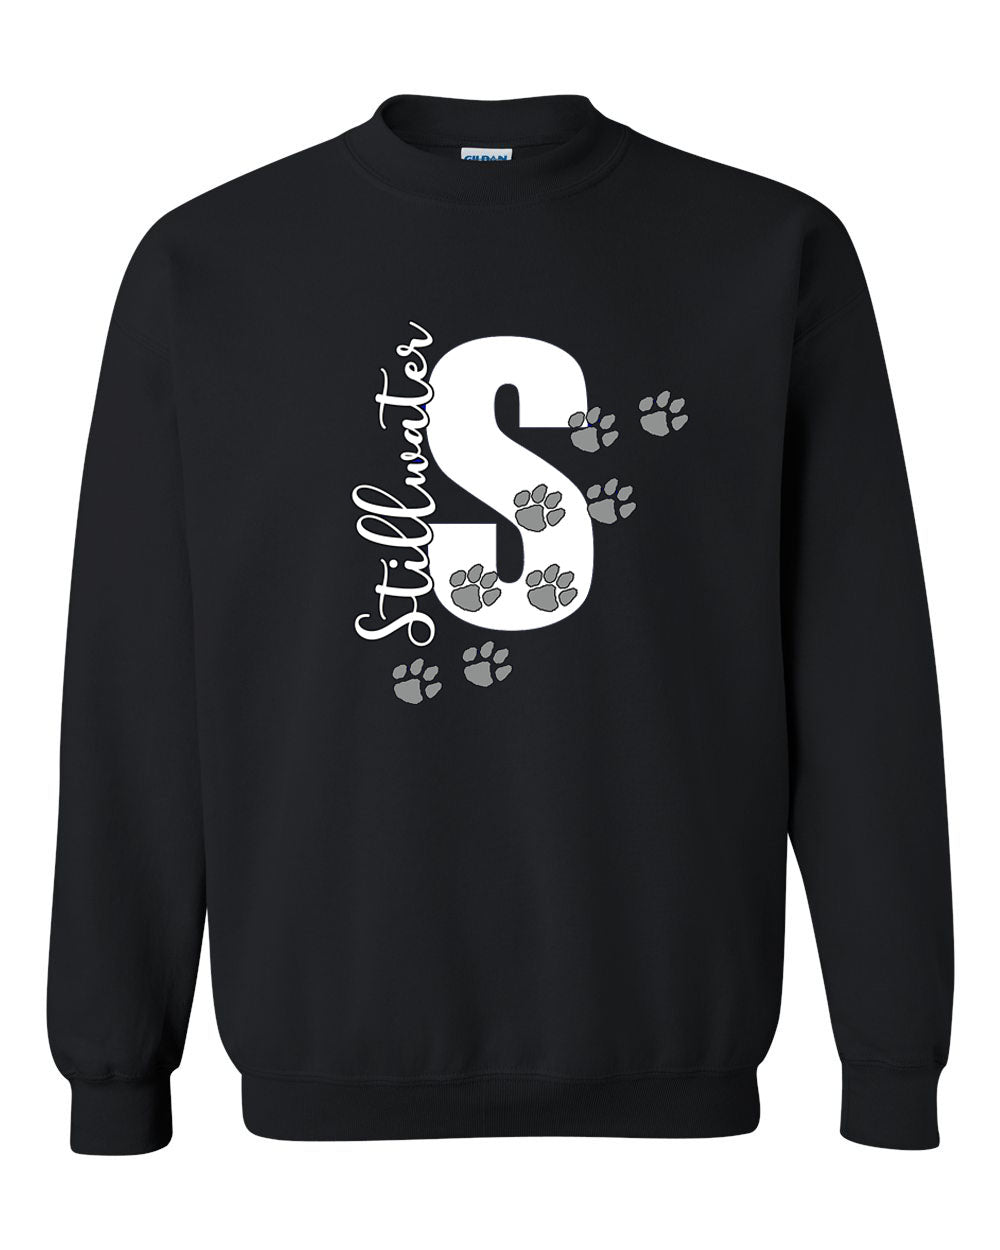 Stillwater Design 6 non hooded sweatshirt